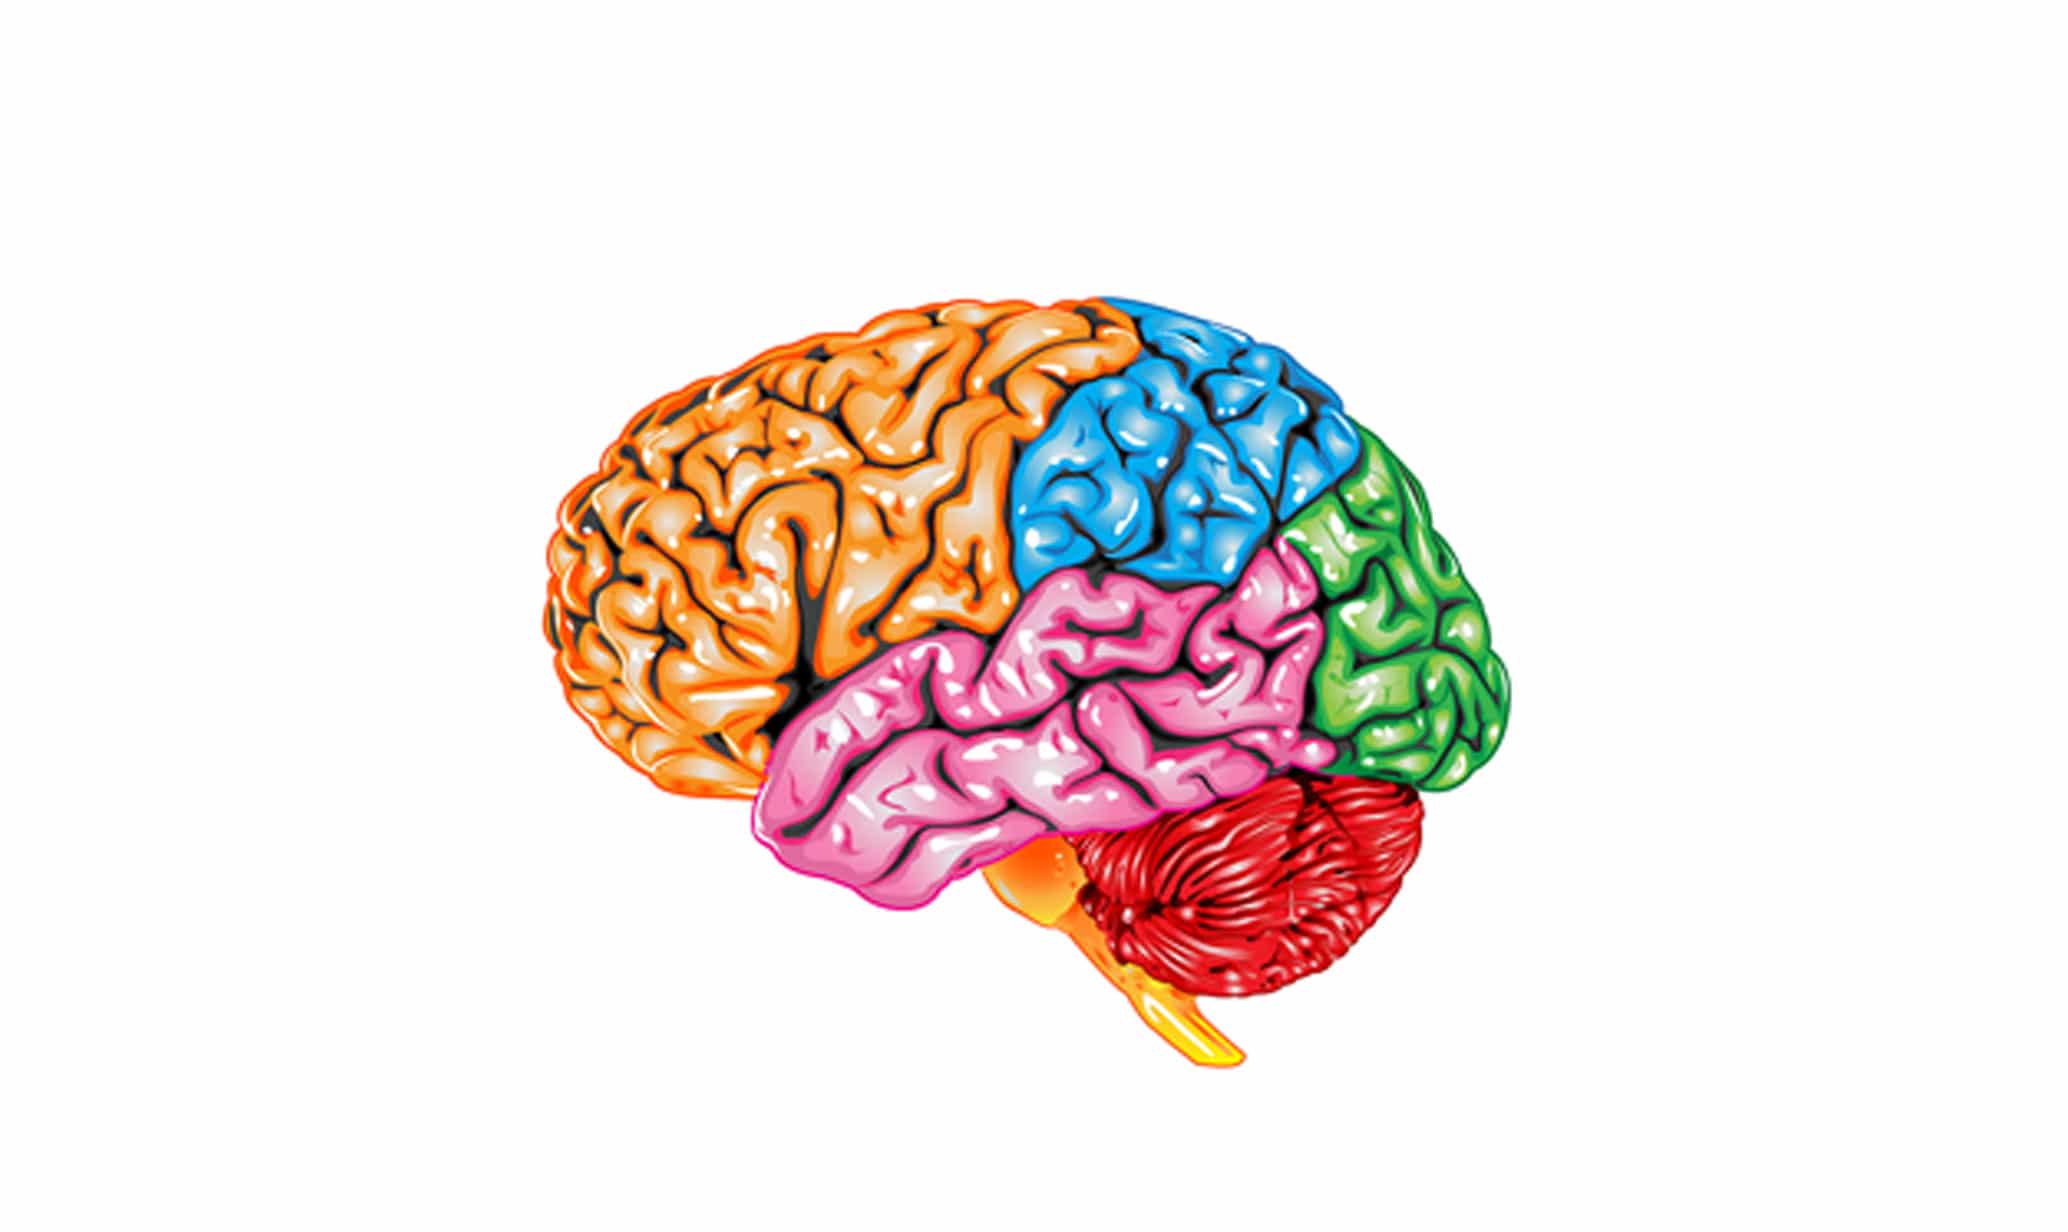 Картинки головного. Изображение головного мозга. Изображение головного мозга человека. Мозг человека для детей. Головной мозг картинки.